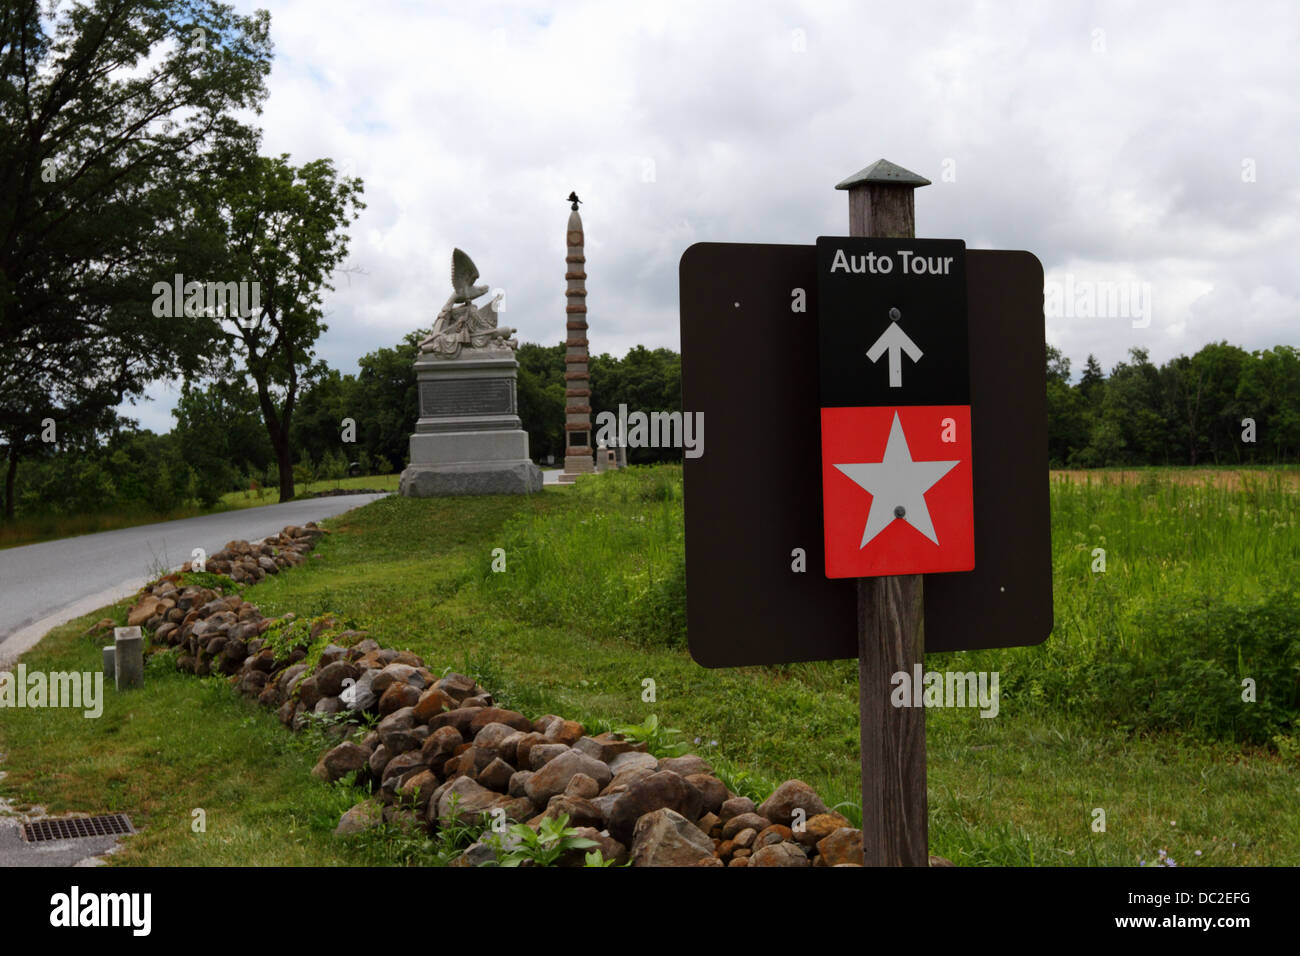 Panneau sur Doubleday Avenue indiquant la route de la visite automatique à travers le champ de bataille de Gettysburg, parc militaire national de Gettysburg, Pennsylvanie, États-Unis Banque D'Images